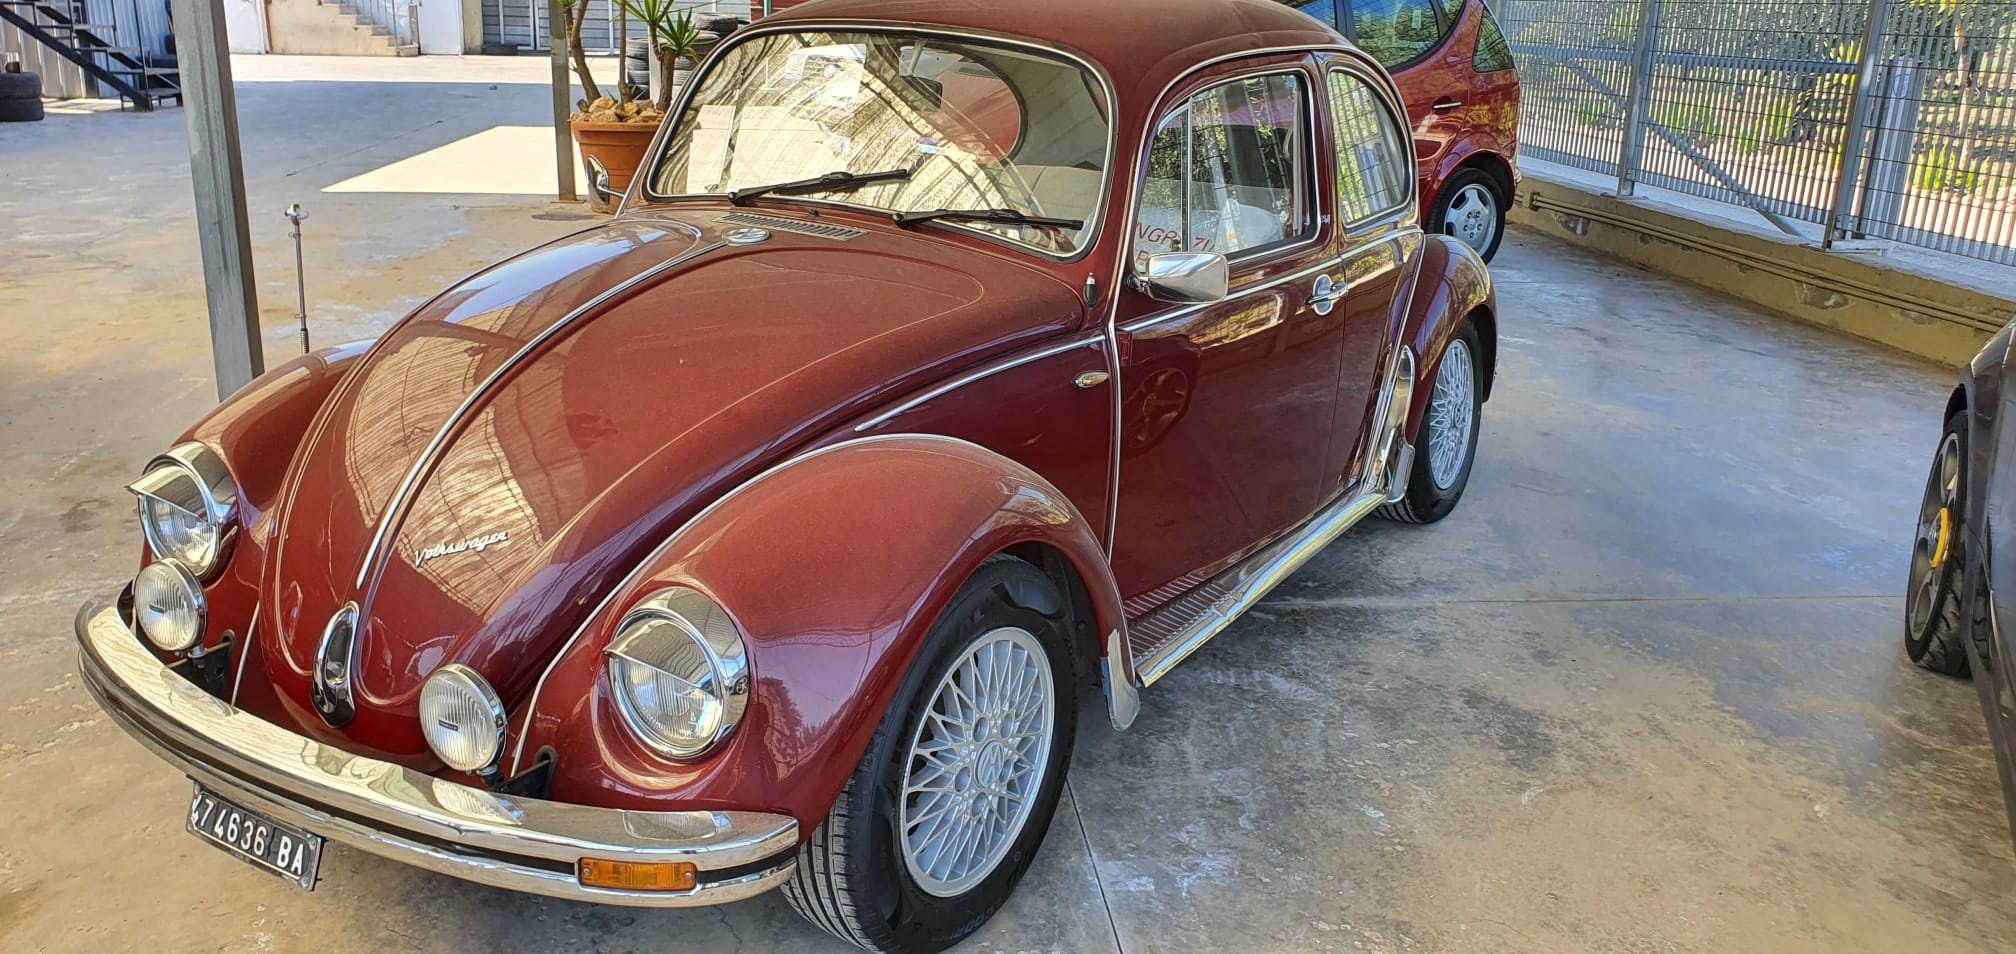 Scopri di più sull'articolo Volkswagen maggiolino anni 70 in vendita presso il nostro autosalone, €15.000. Totalmente restaurata, ben tenuta come da foto, pari al nuovo. Info solo telefonando al 348 5846422.<br>Universal Car di Nicola Ladisa.